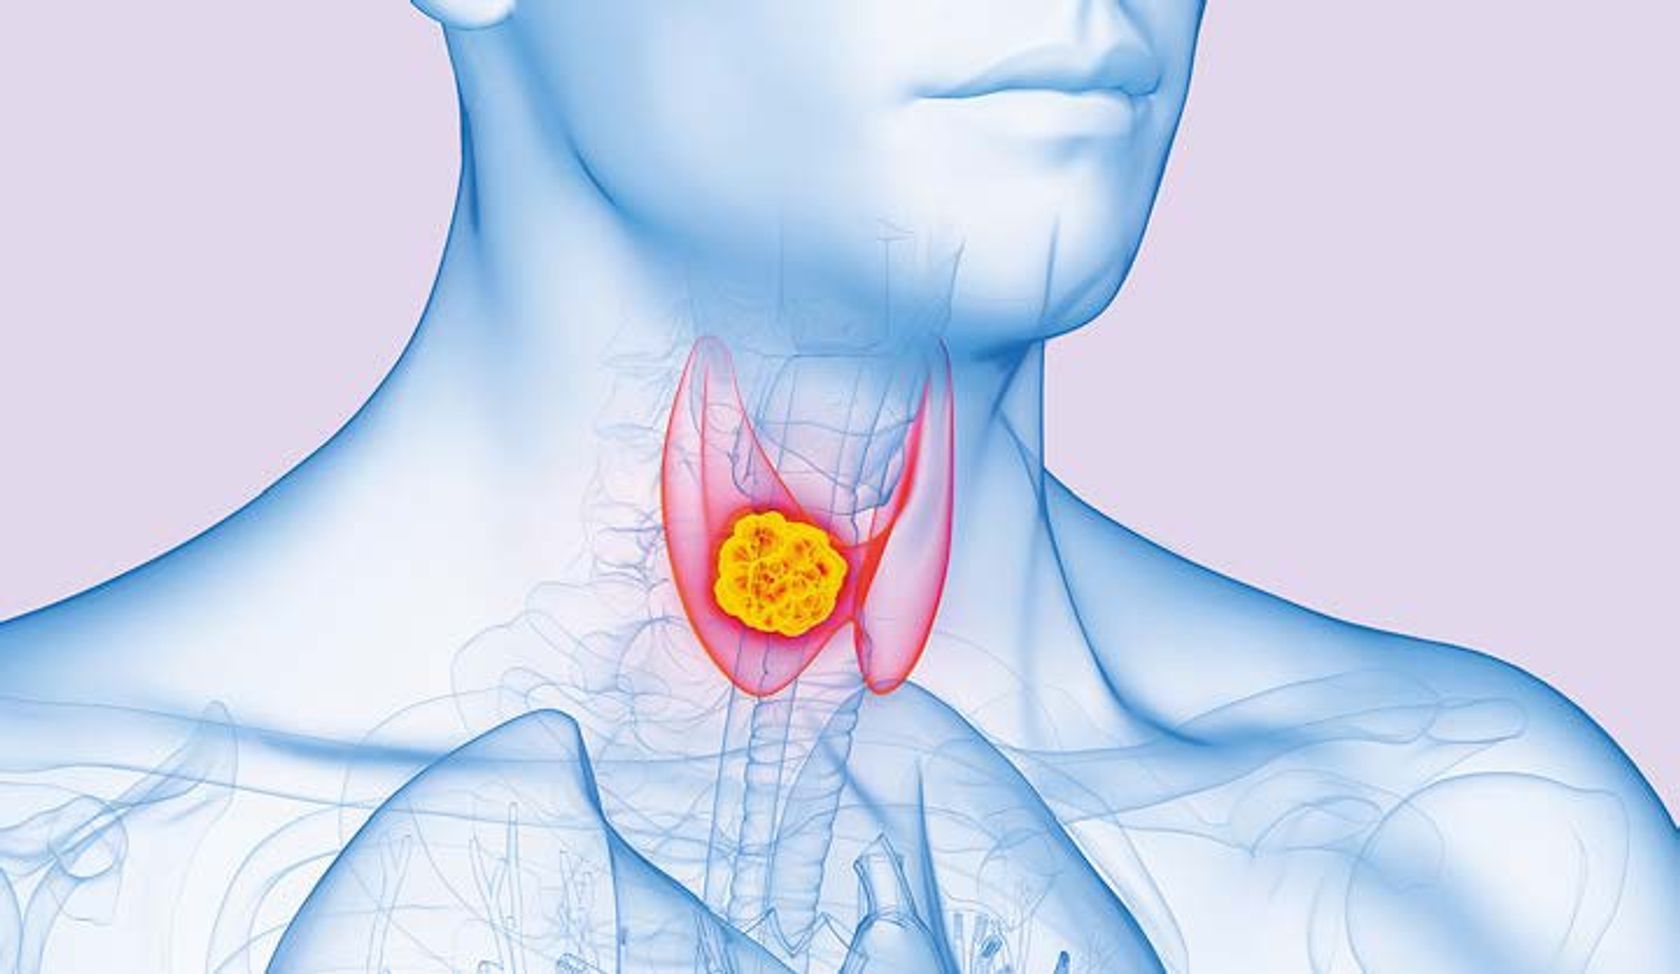 Ki-generierte Abbildung eines Halses mit Schilddrüse und einem Tumor (PTC)  daran.